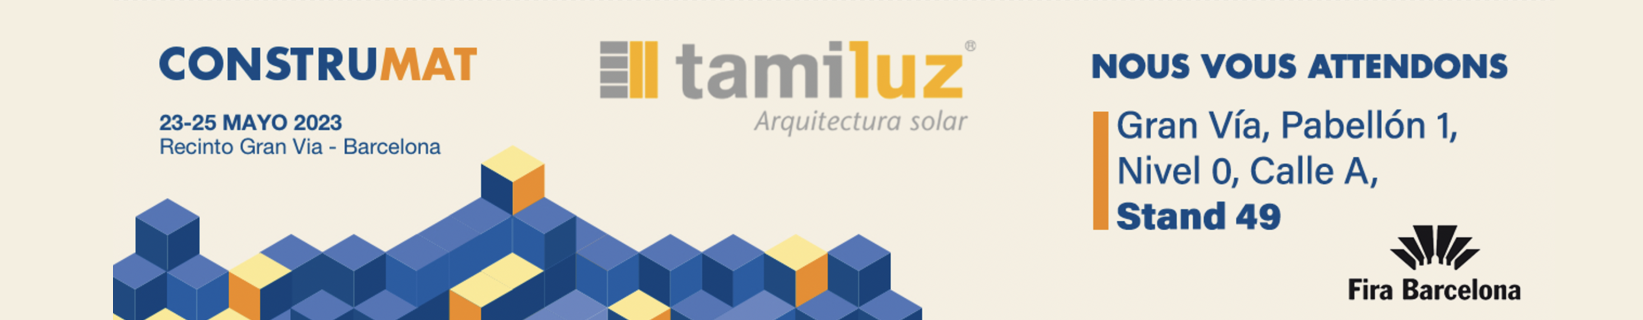 systèmes d'ombrage solaire pour les bâtiments